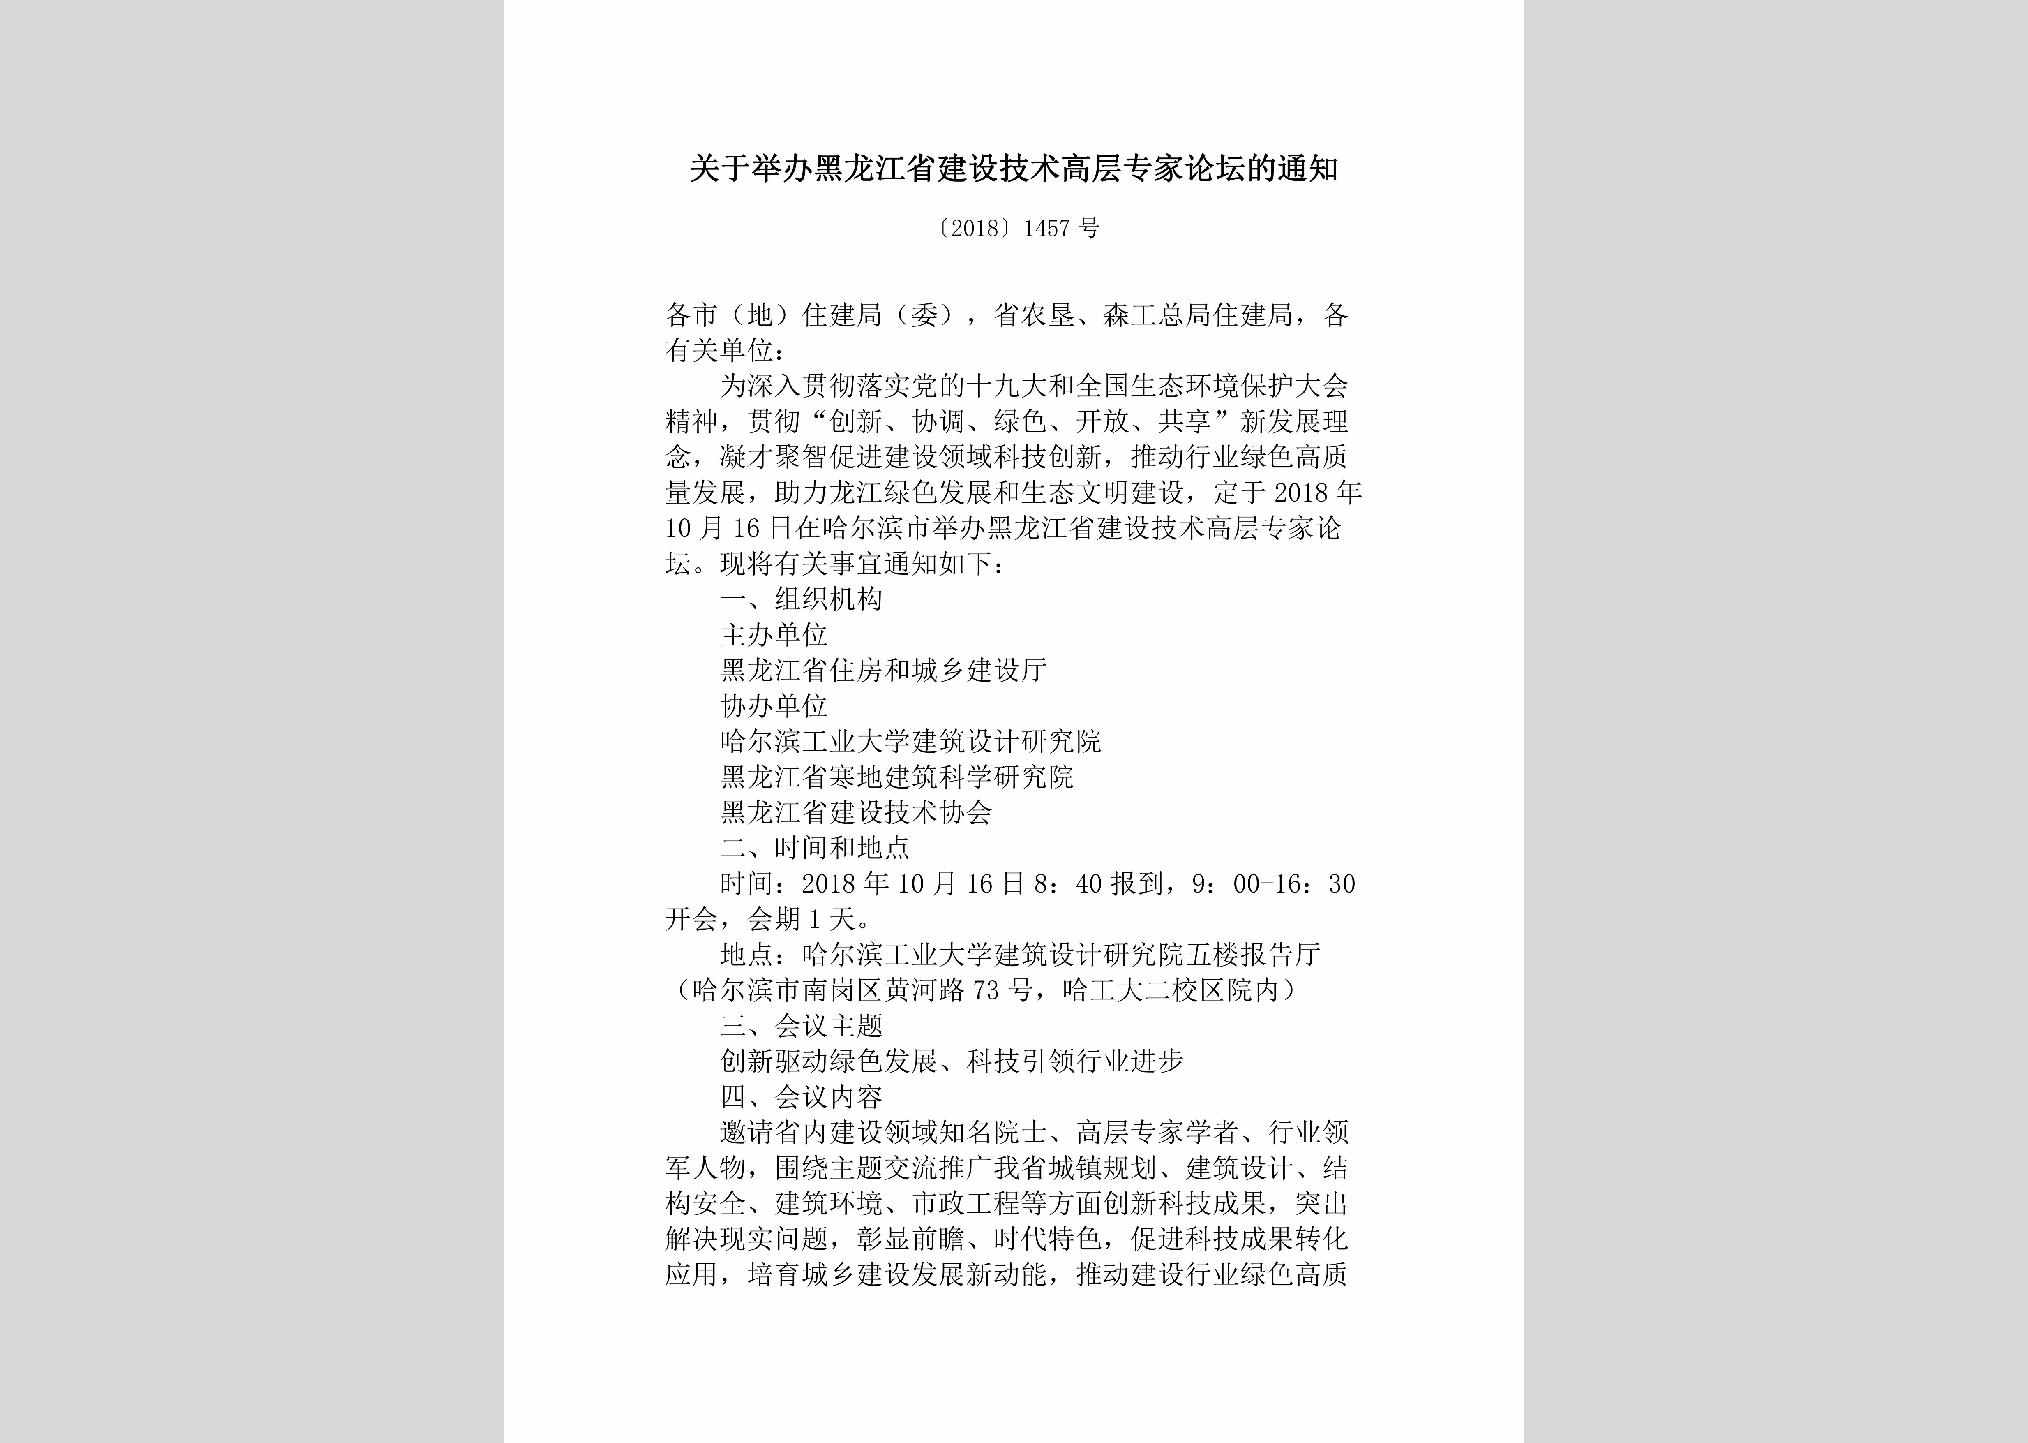 [2018]1457号：关于举办黑龙江省建设技术高层专家论坛的通知